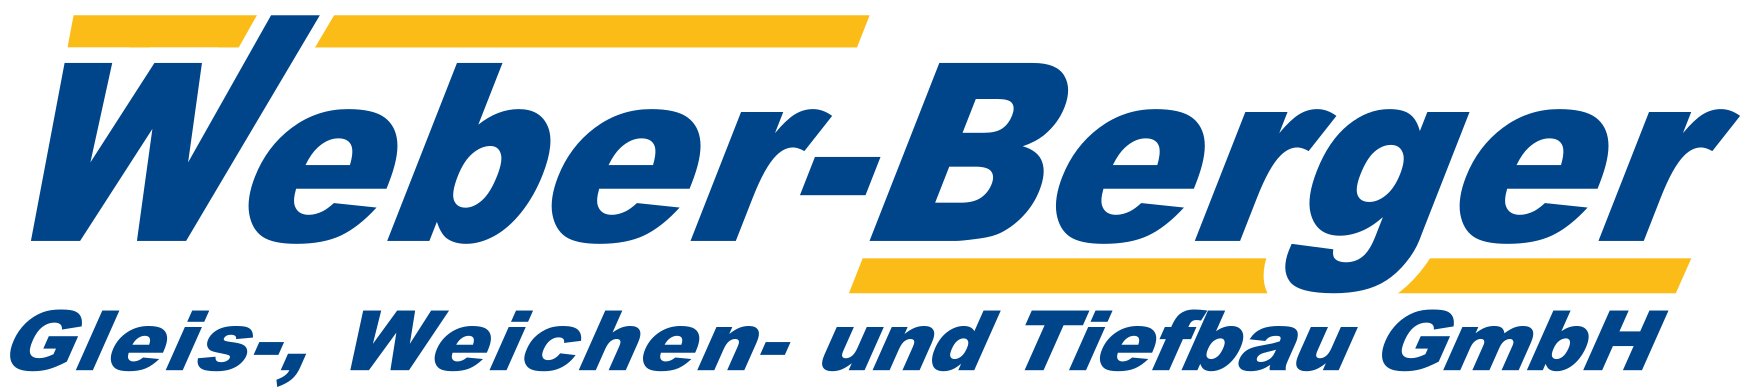 Weber-Berger Gleis-, Weichen- und Tiefbau GmbH